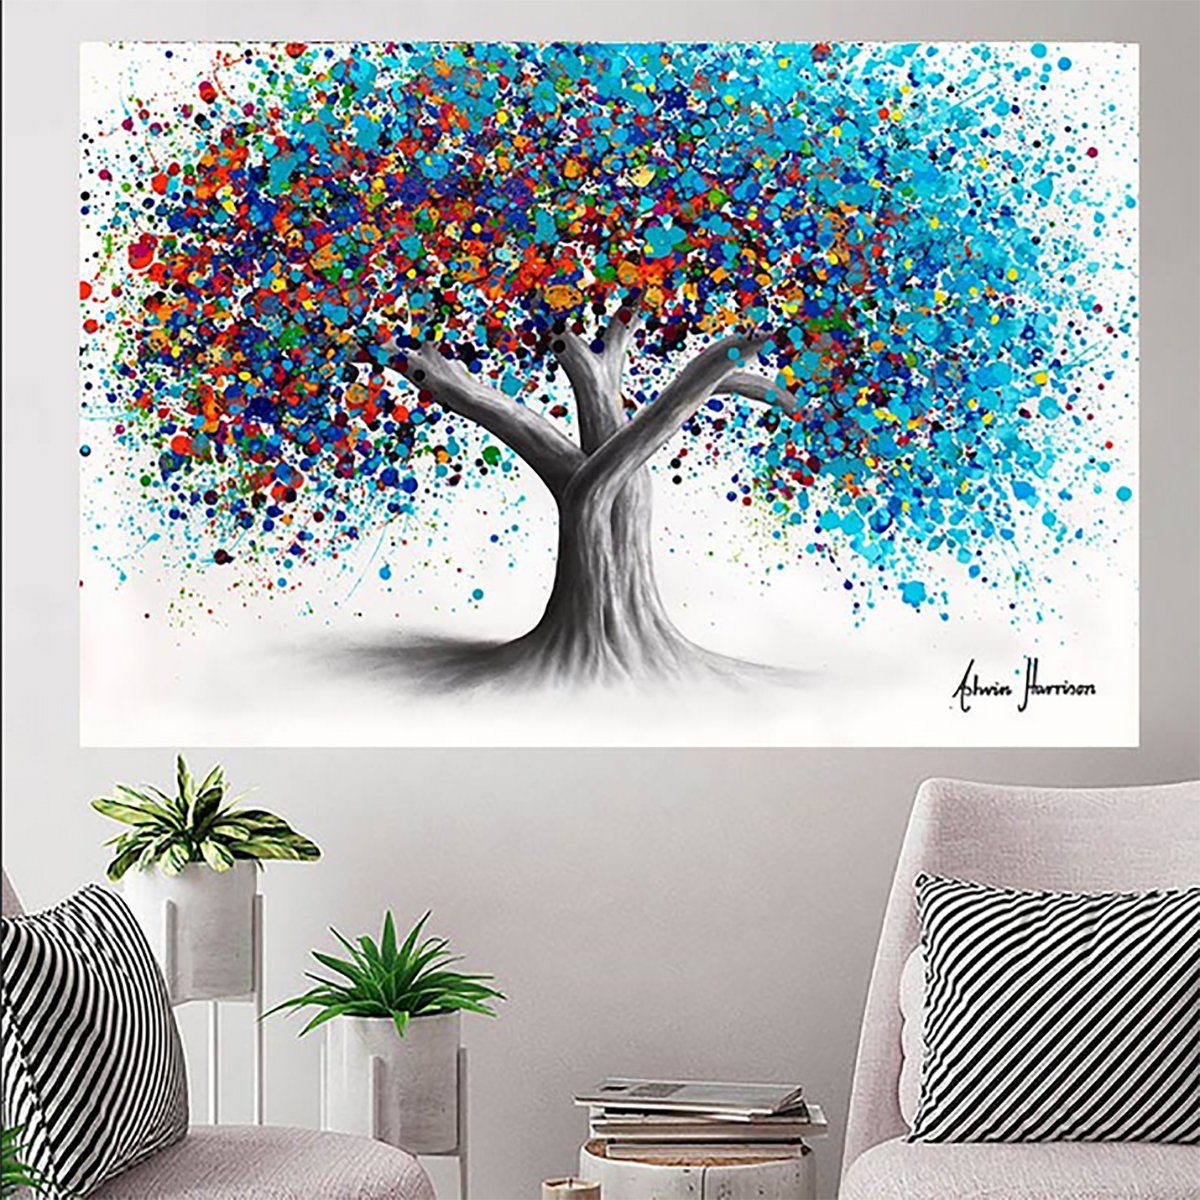 TPFLiving Kunstdruck (OHNE RAHMEN) Poster - Leinwand - Wandbild, Baum - Abstrakte Bäume in vielen bunten Farben (Leinwand Wohnzimmer, Leinwand Bilder, Kunstdruck), Leinwand bunt - Größe 20x30cm